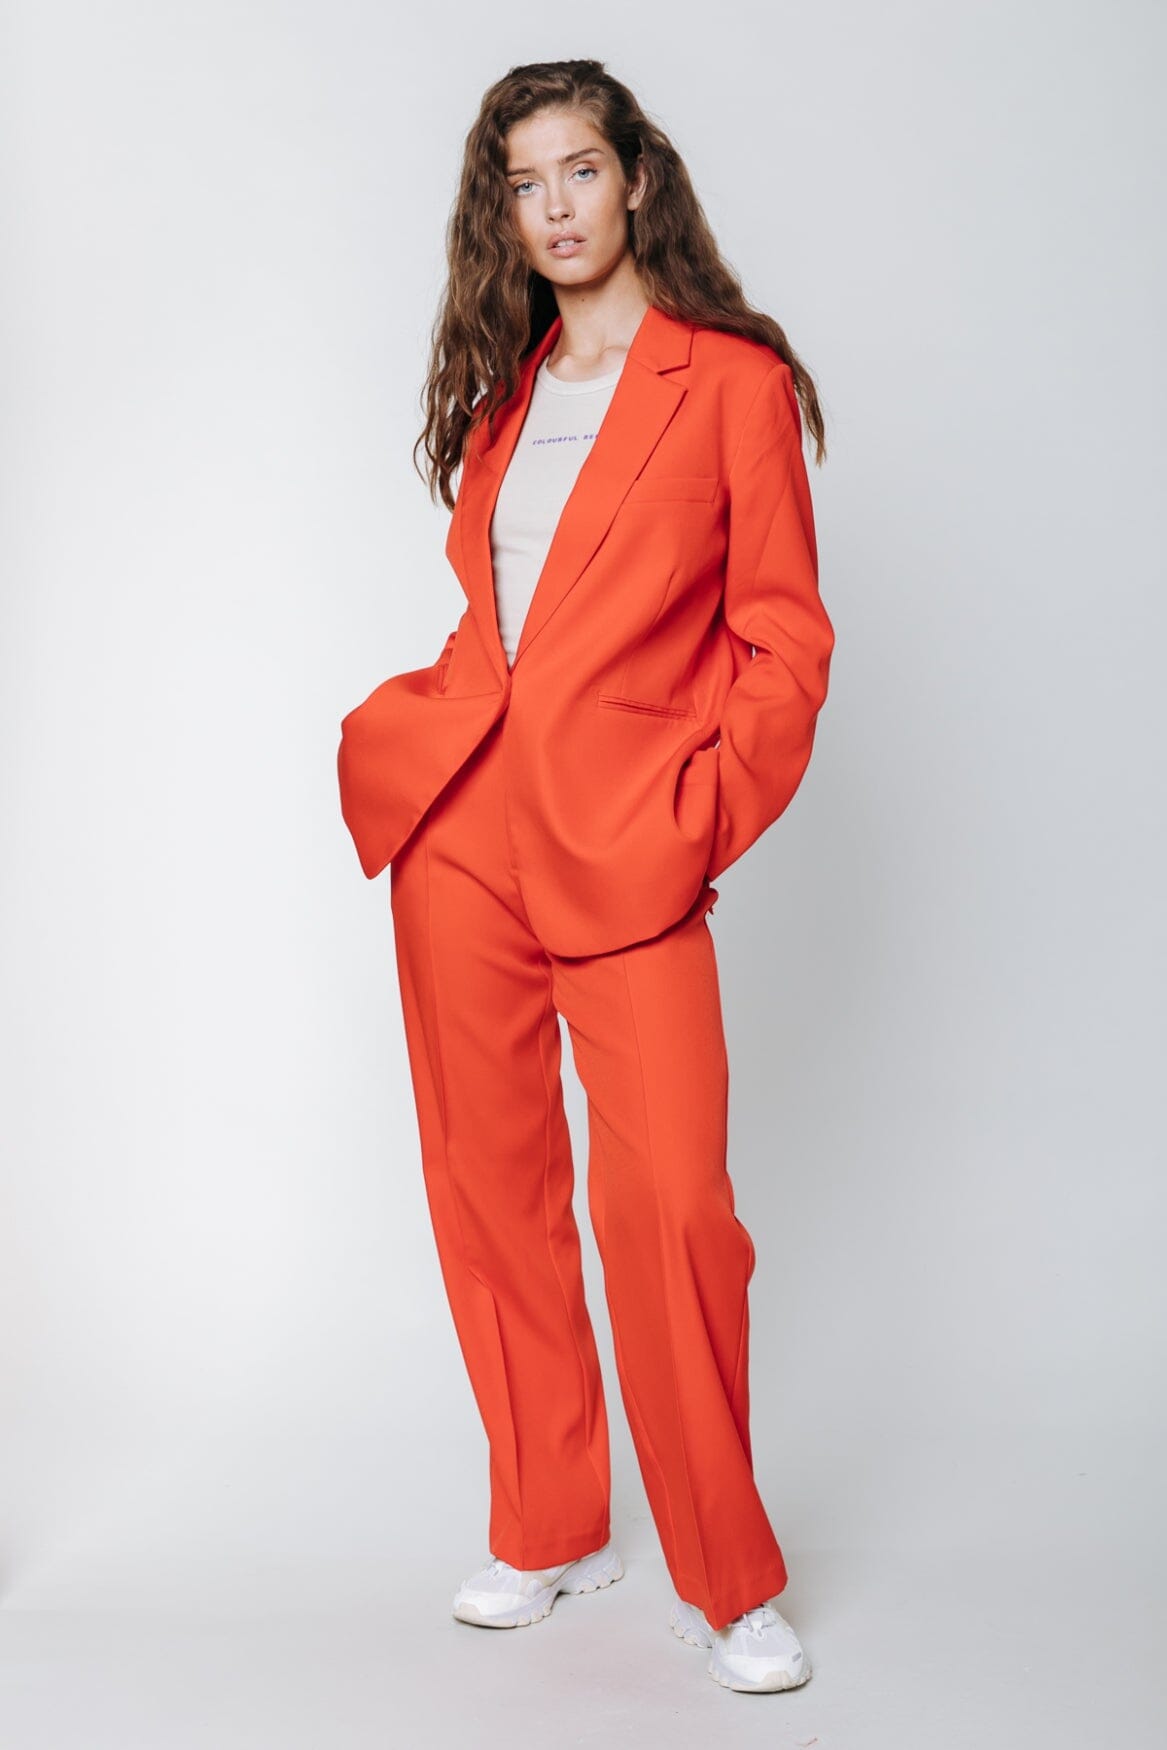 Colourful Rebel Mimmi Blazer | Bright orange